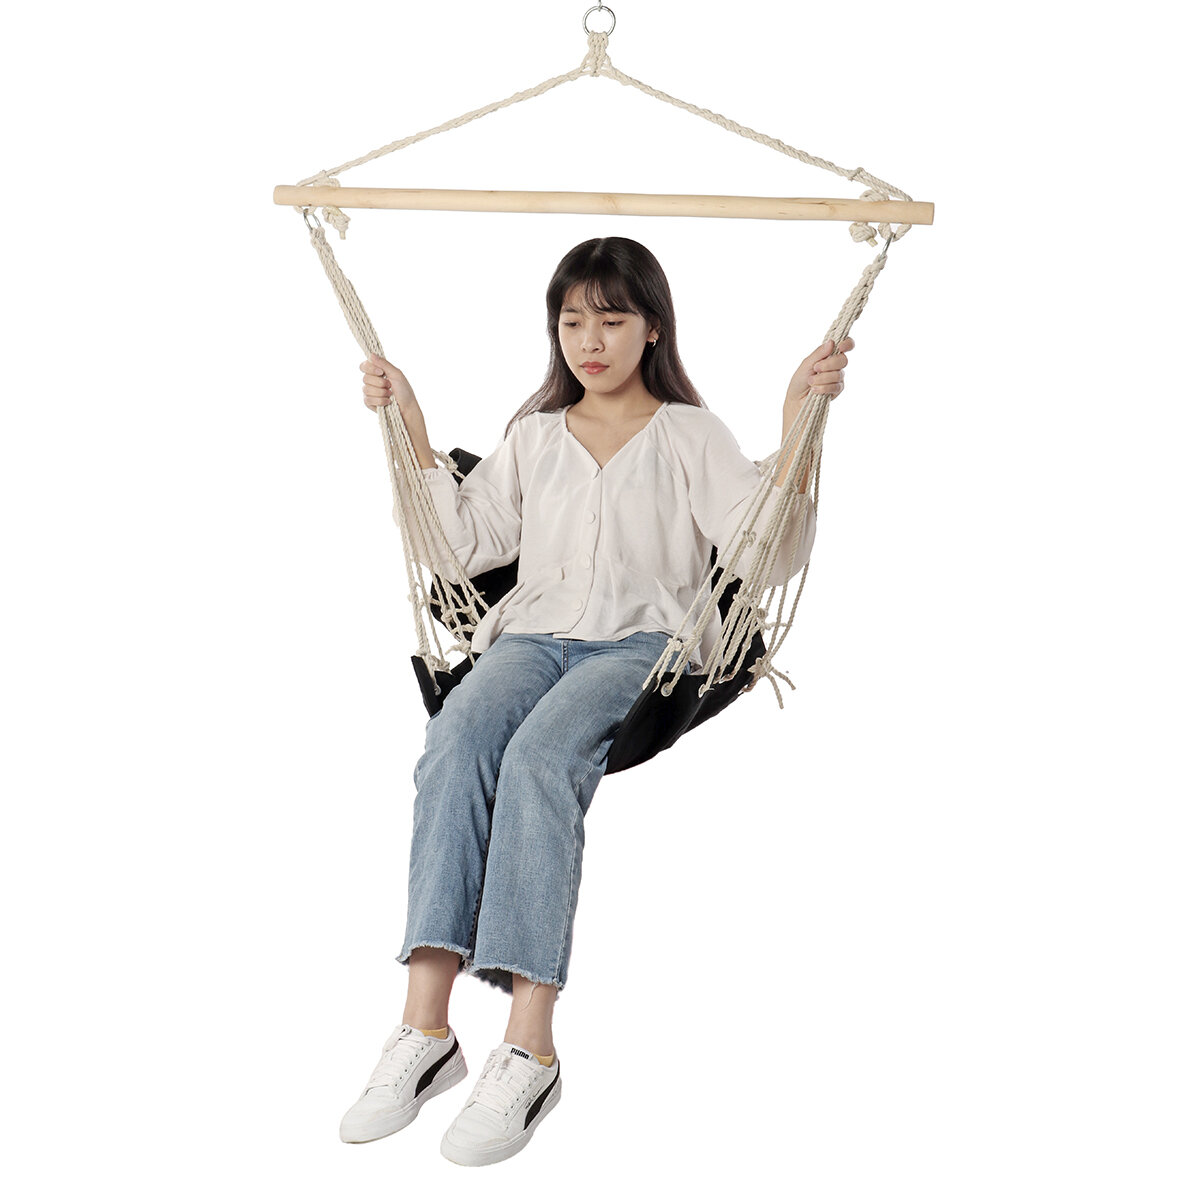 Chaise hamac en coton de 100 * 50 cm, charge maximale de 160 kg, confortable et simple, idéale pour se balancer dans le jardin.